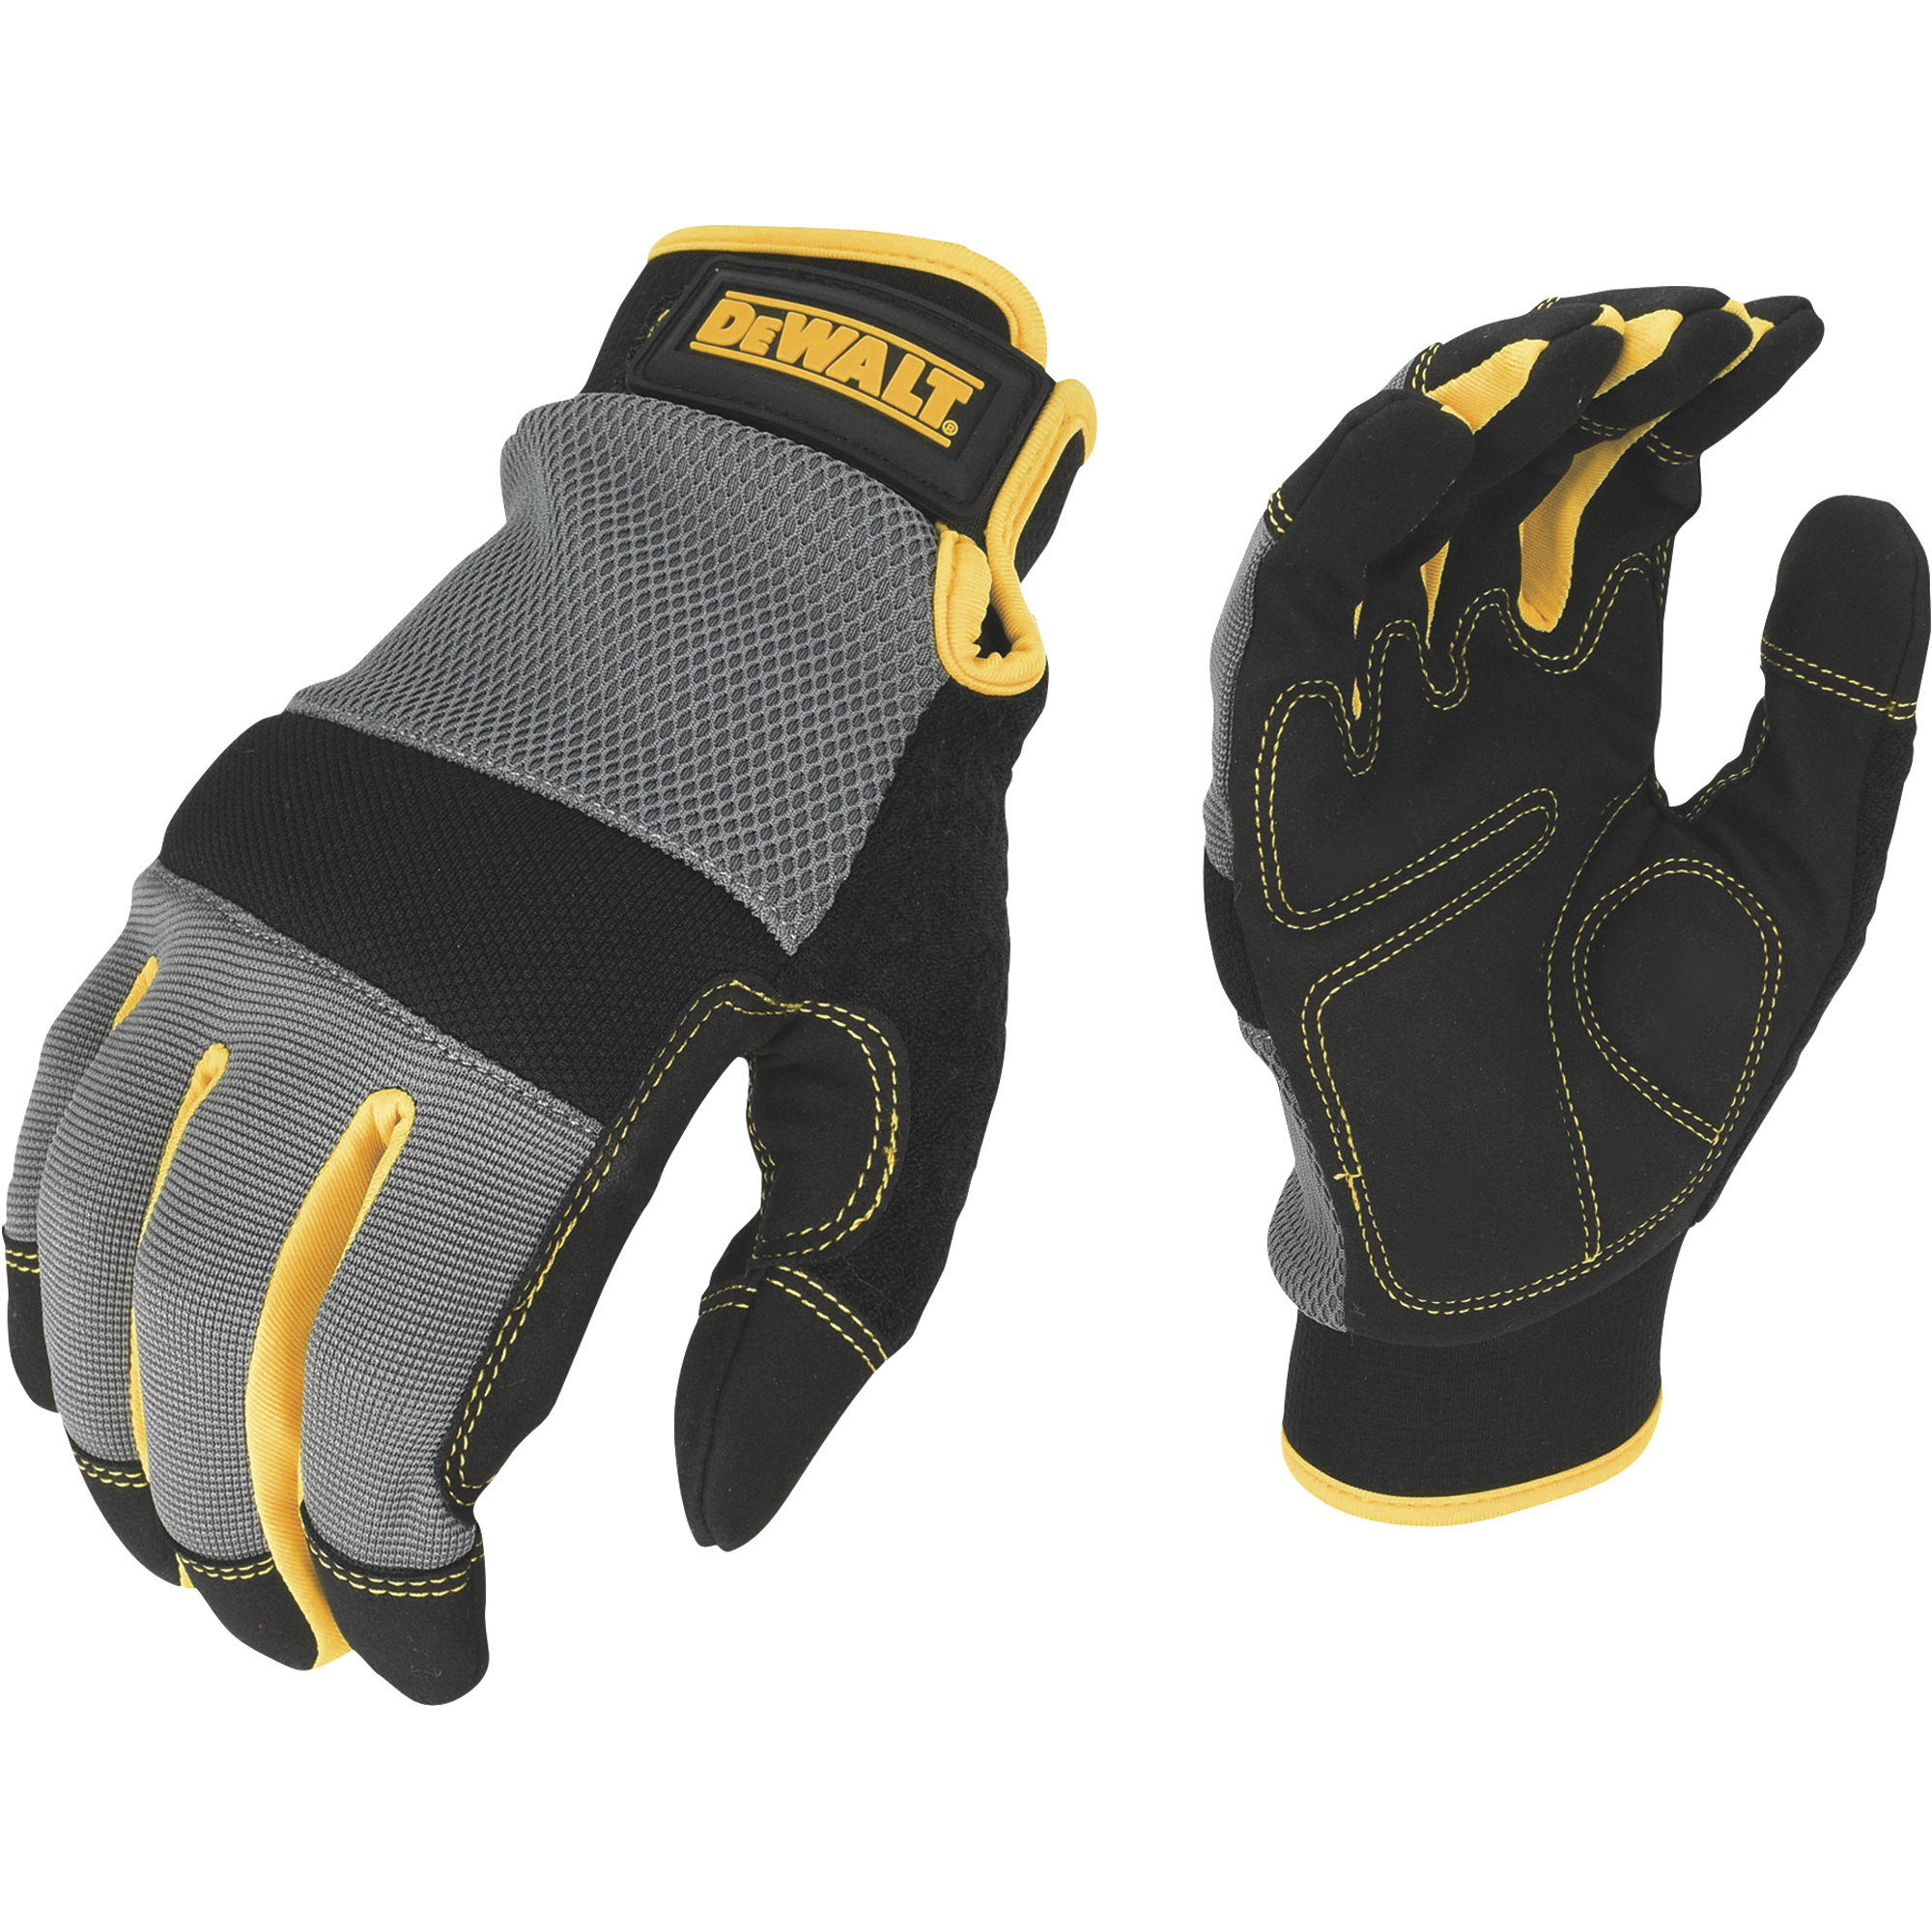 DEWALT Men's Foam Padded Performance Mechanic's Gloves â Gray/Black/Yellow, Large, Model DPG211L